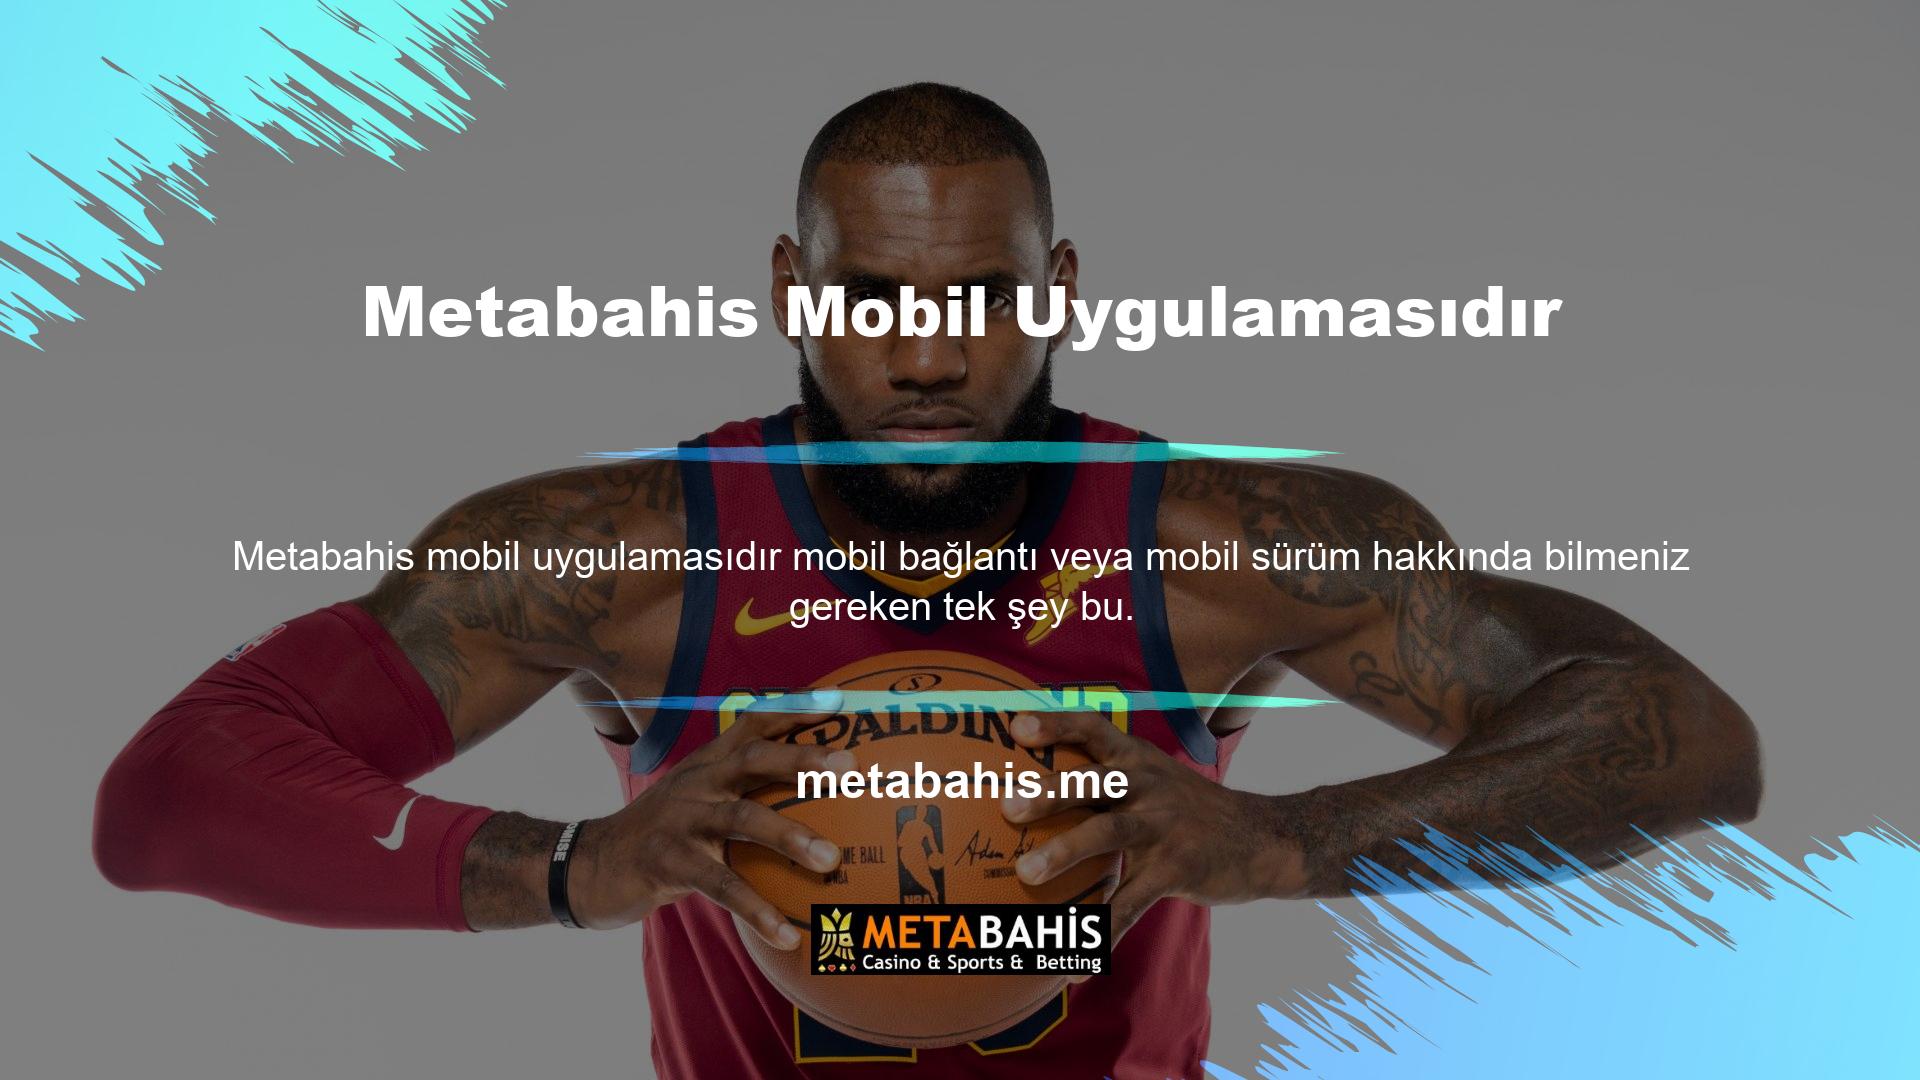 Yararlı bulabileceğiniz bir diğer seçenek ise Metabahis mobil uygulamasıdır